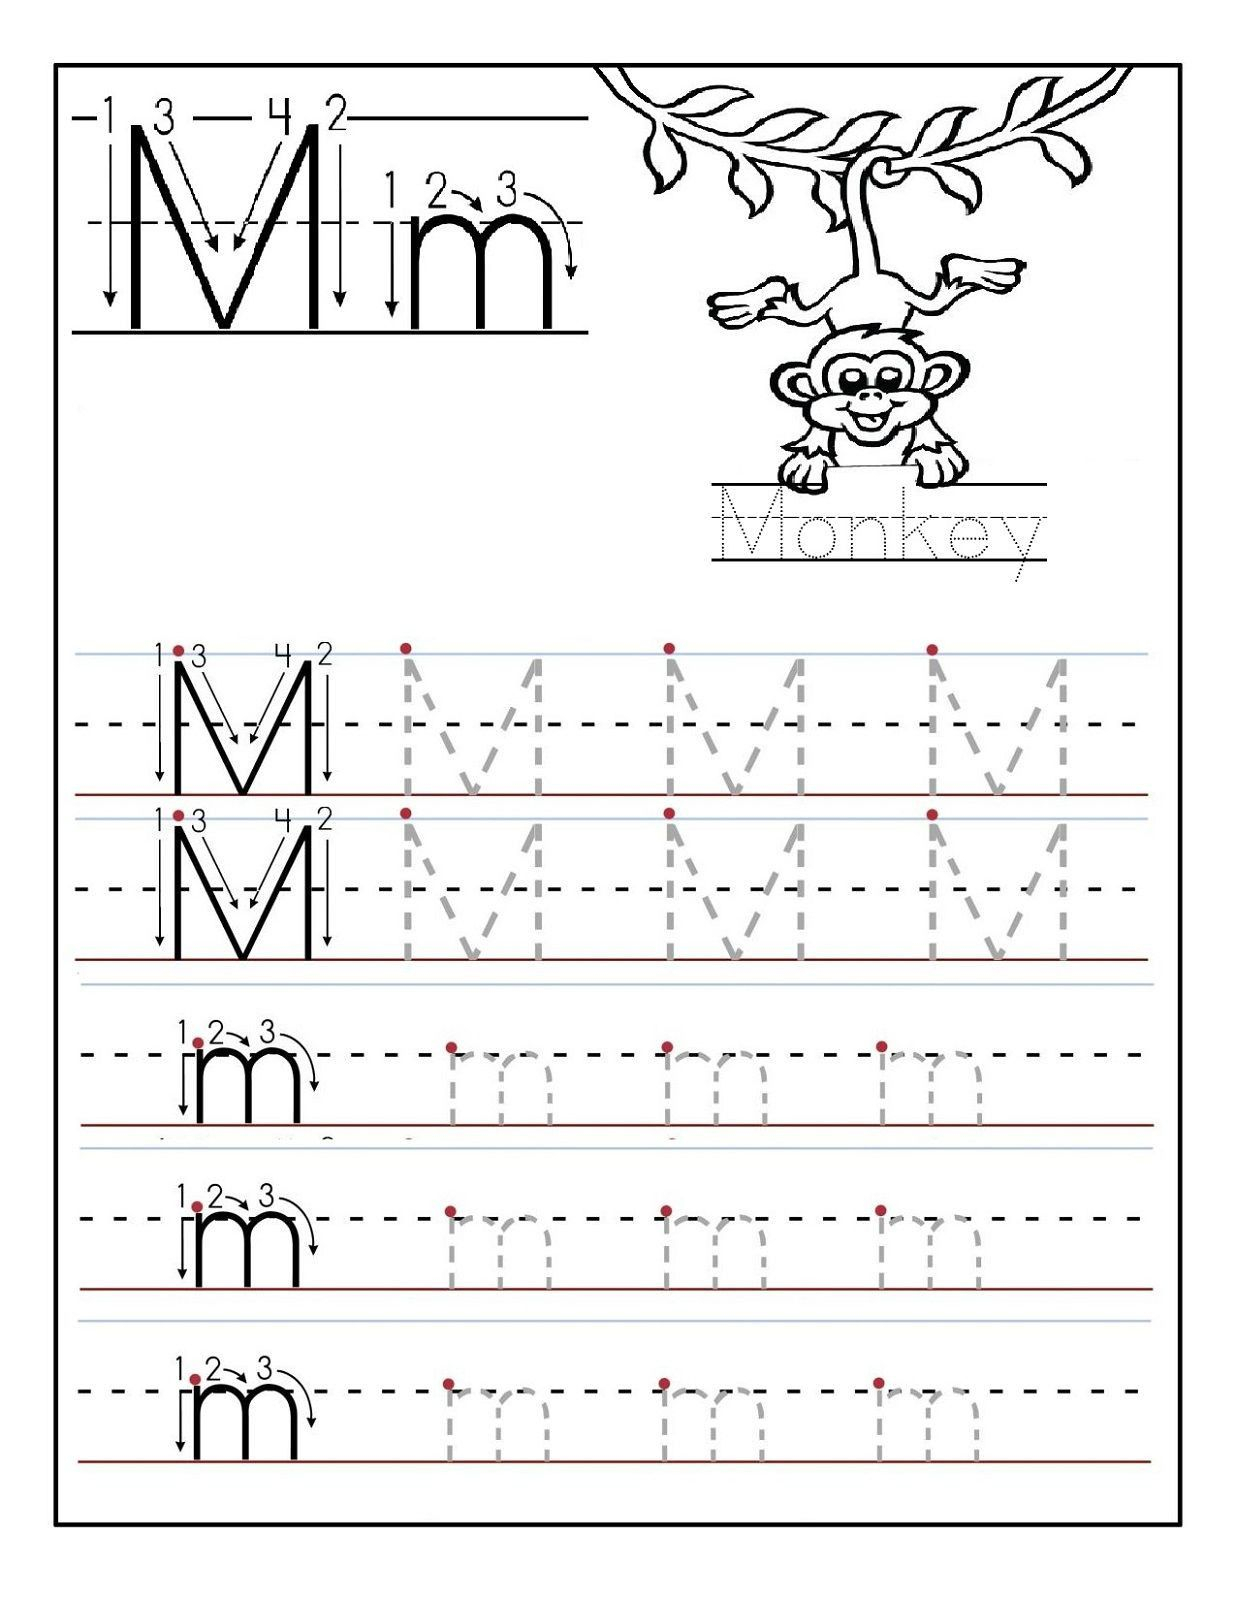 2 Preschool Letter N Tracing Worksheets In 2020 | Printable pertaining to Letter N Tracing Worksheets Preschool